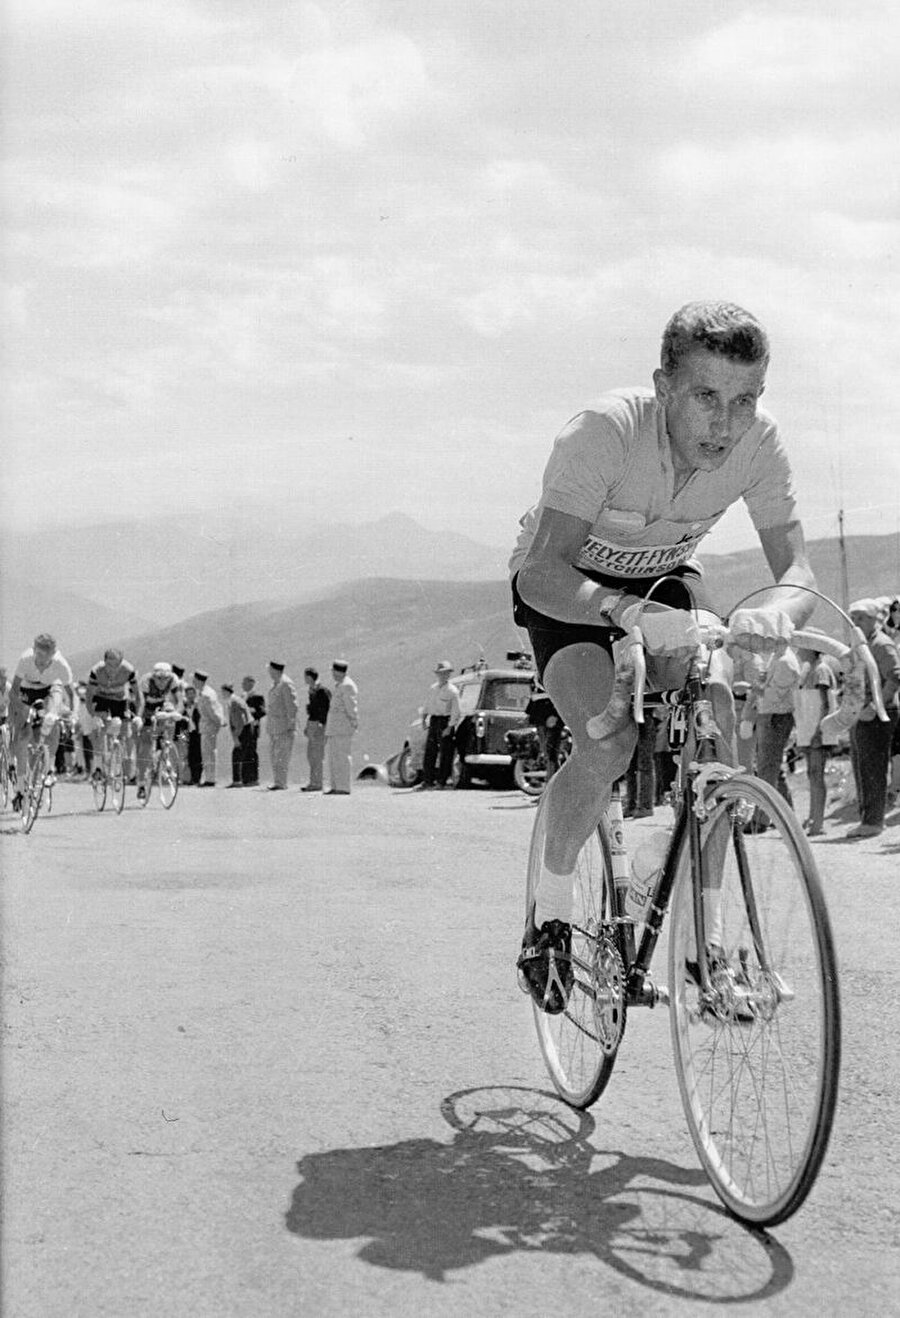 4 yaşında bisiklete merak sardı

                                    
                                    
                                    
                                    
                                    Aile fertleri çilek bahçelerinde çalışıyordu. Anquetil henüz dört yaşındayken evlerinin bulunduğu köy ile çilek bahçesindeki uzun mesafeyi bisiklet ile gidip gelmeye başladı. 
                                
                                
                                
                                
                                